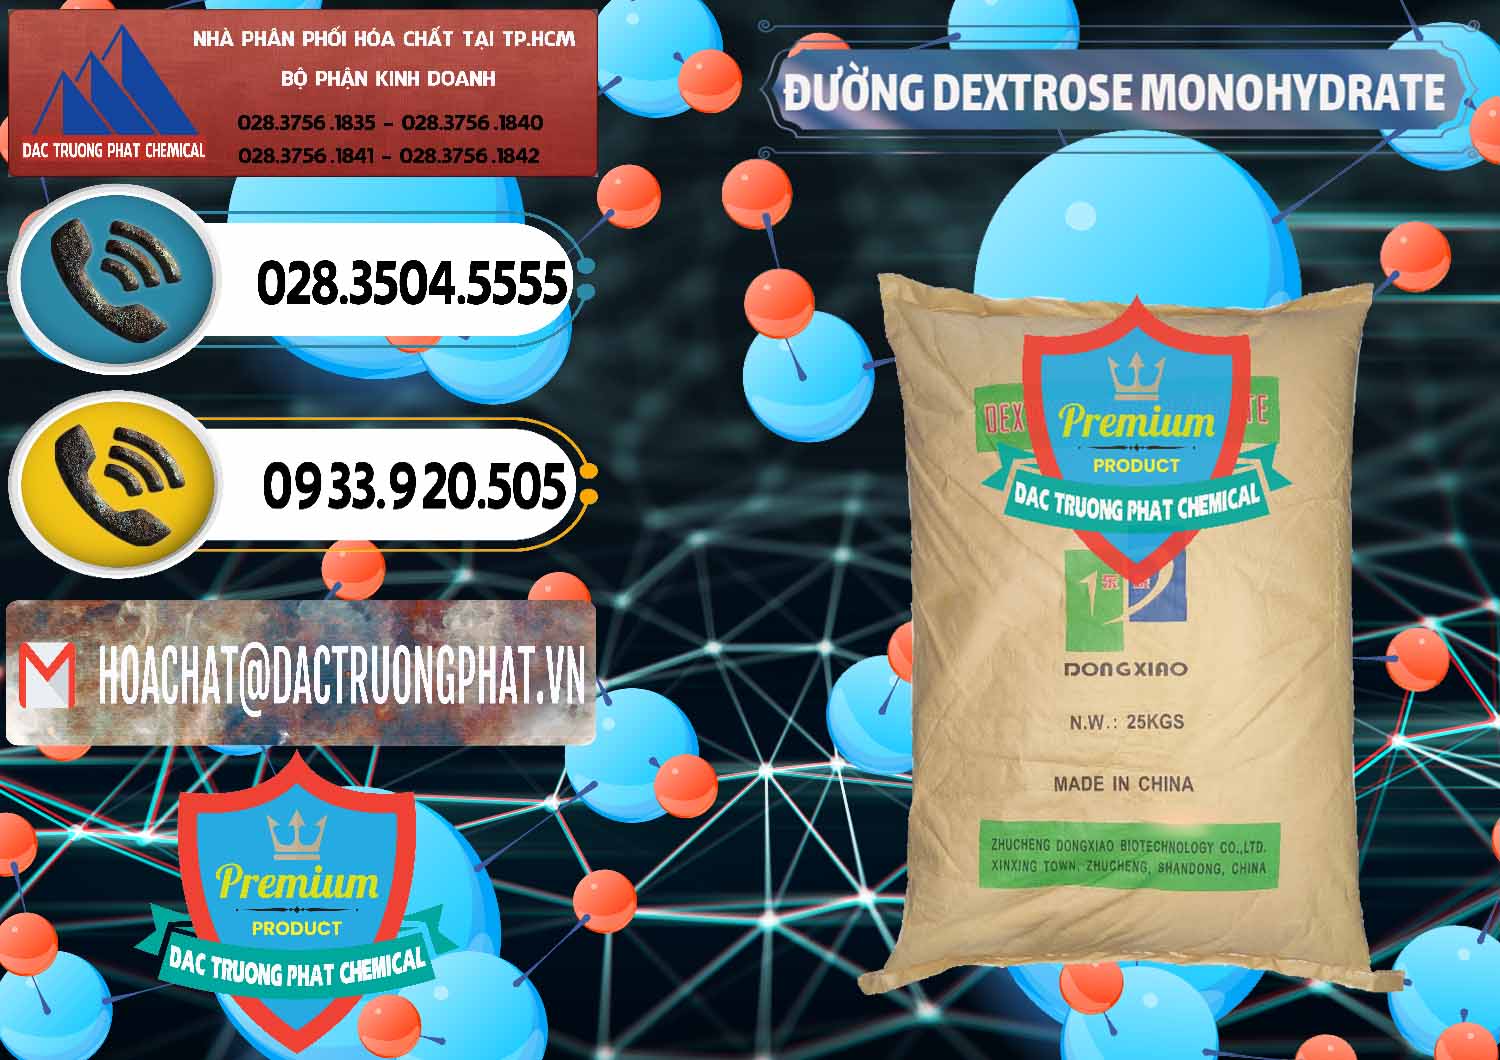 Cty bán _ cung cấp Đường Dextrose Monohydrate Food Grade Dongxiao Trung Quốc China - 0063 - Nơi chuyên cung cấp & kinh doanh hóa chất tại TP.HCM - hoachatdetnhuom.vn